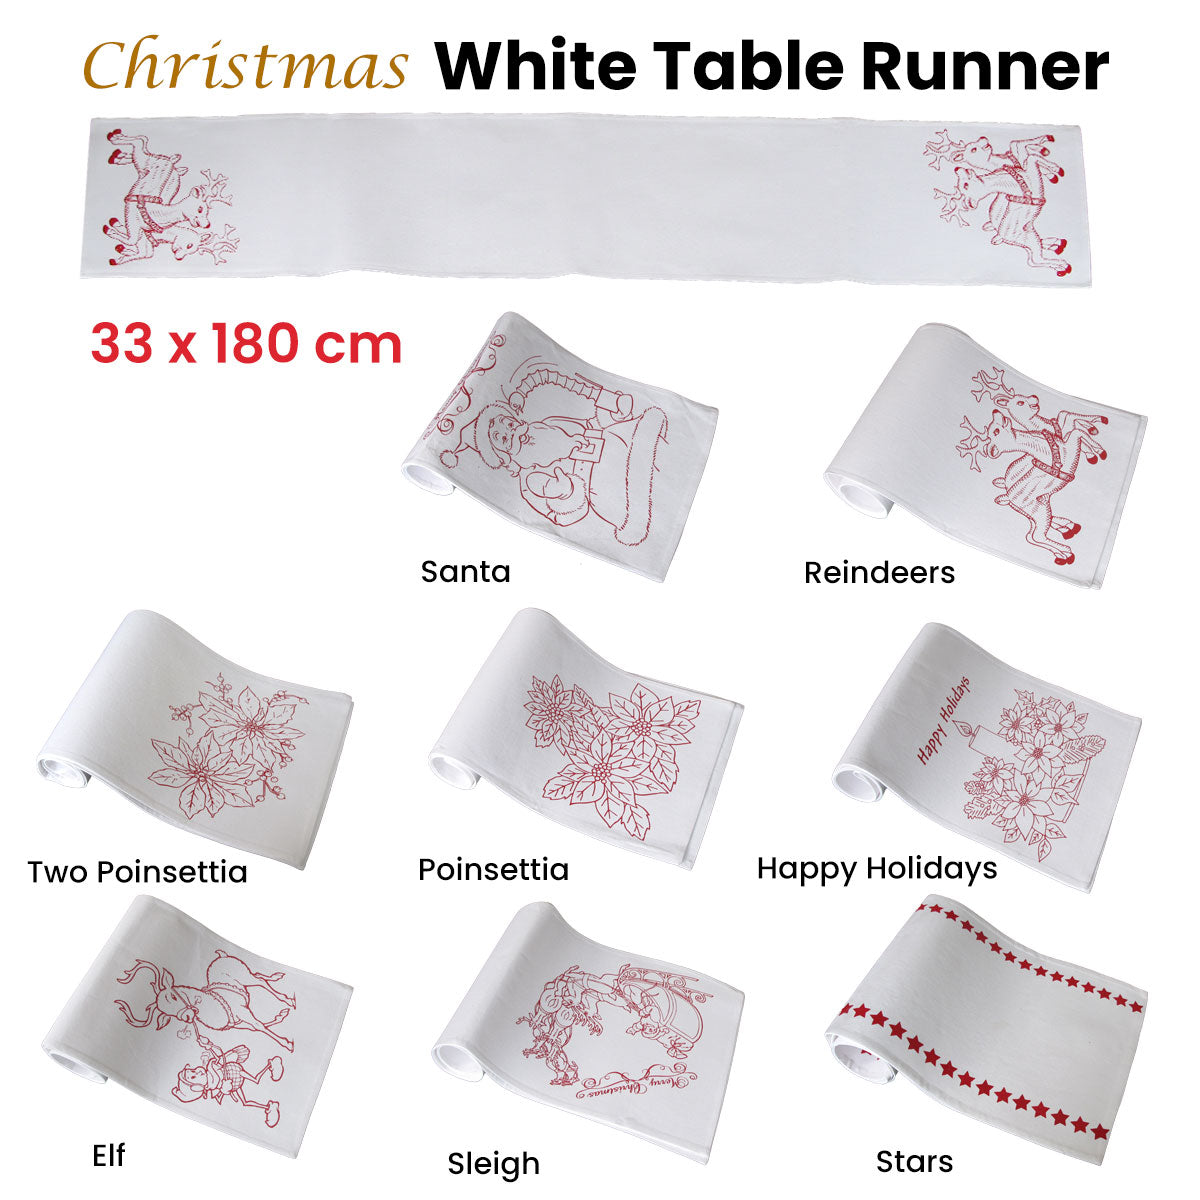 Christmas Print White Table Runner 33 x 180cm Poinsettia